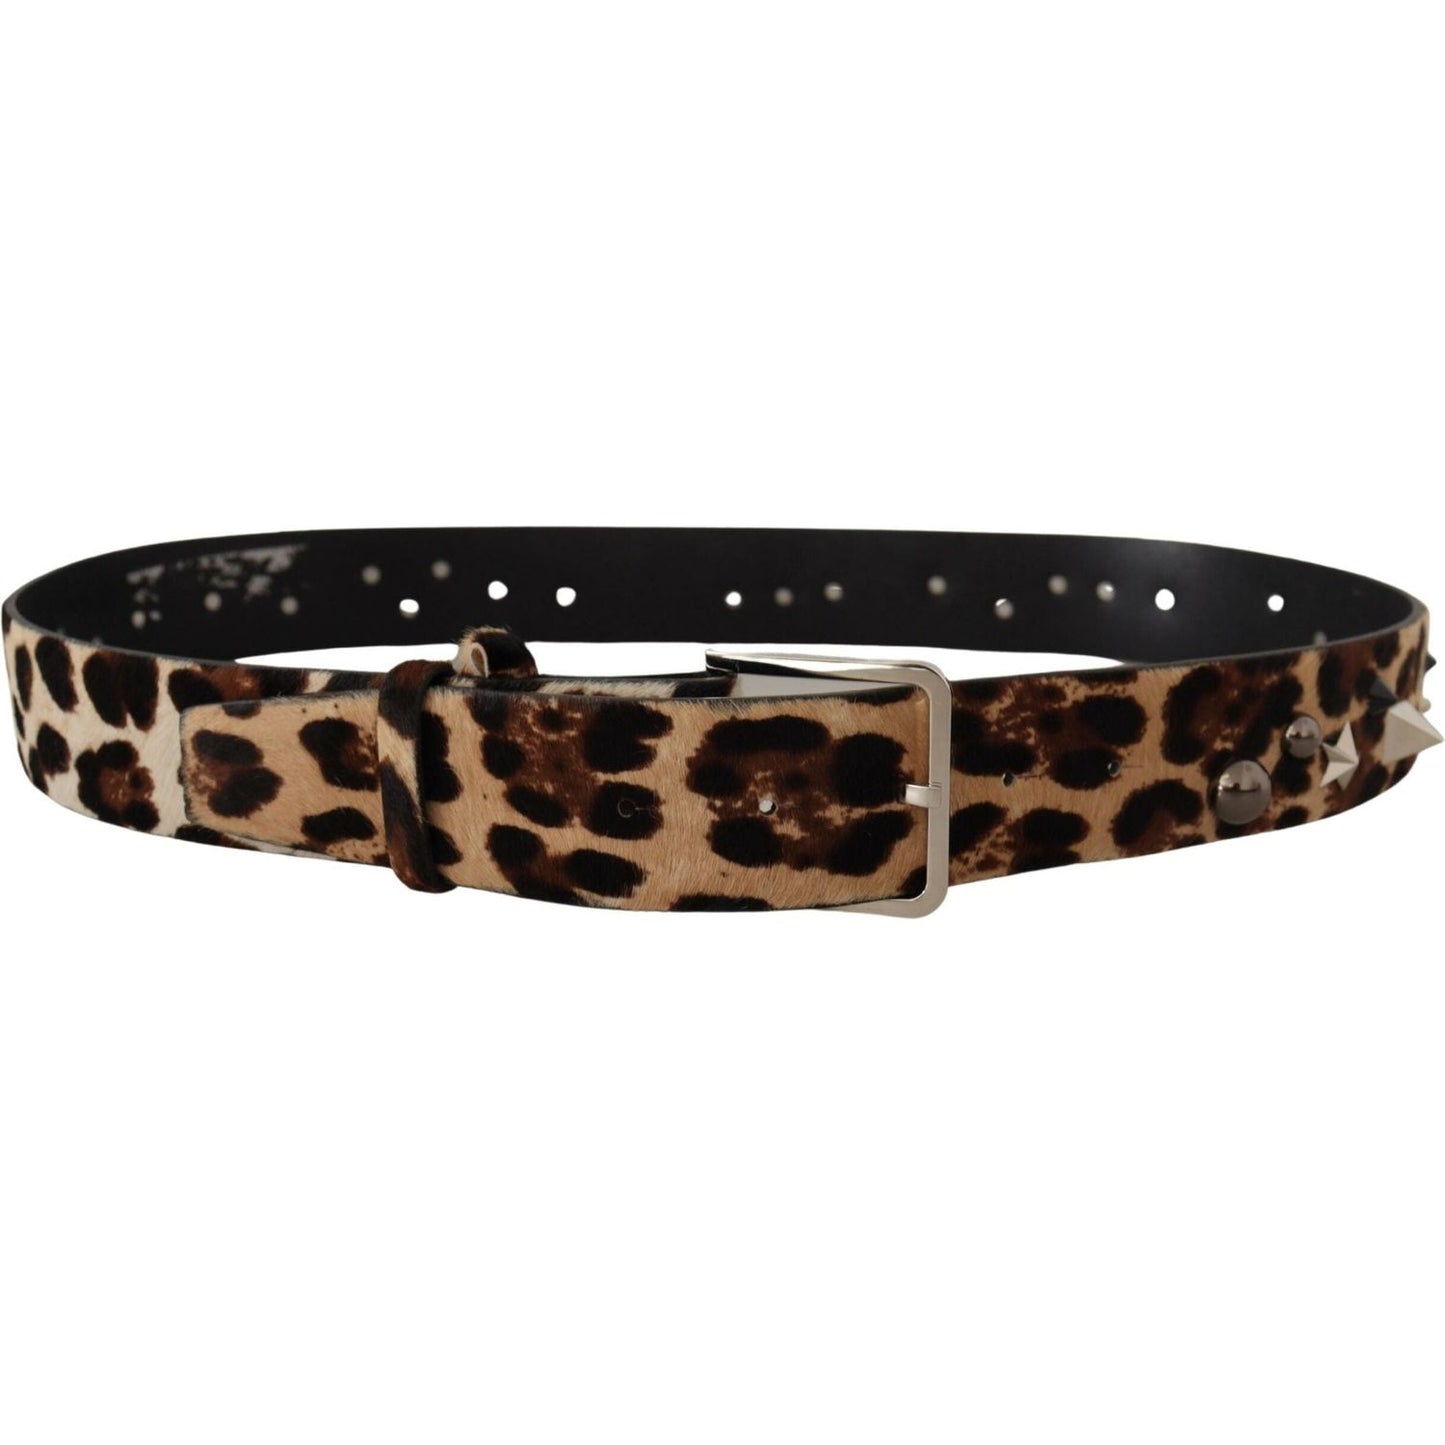 Dolce & Gabbana Elegant Leopard Print Leather Belt brown-leopard-print-studded-leather-metal-buckle-belt